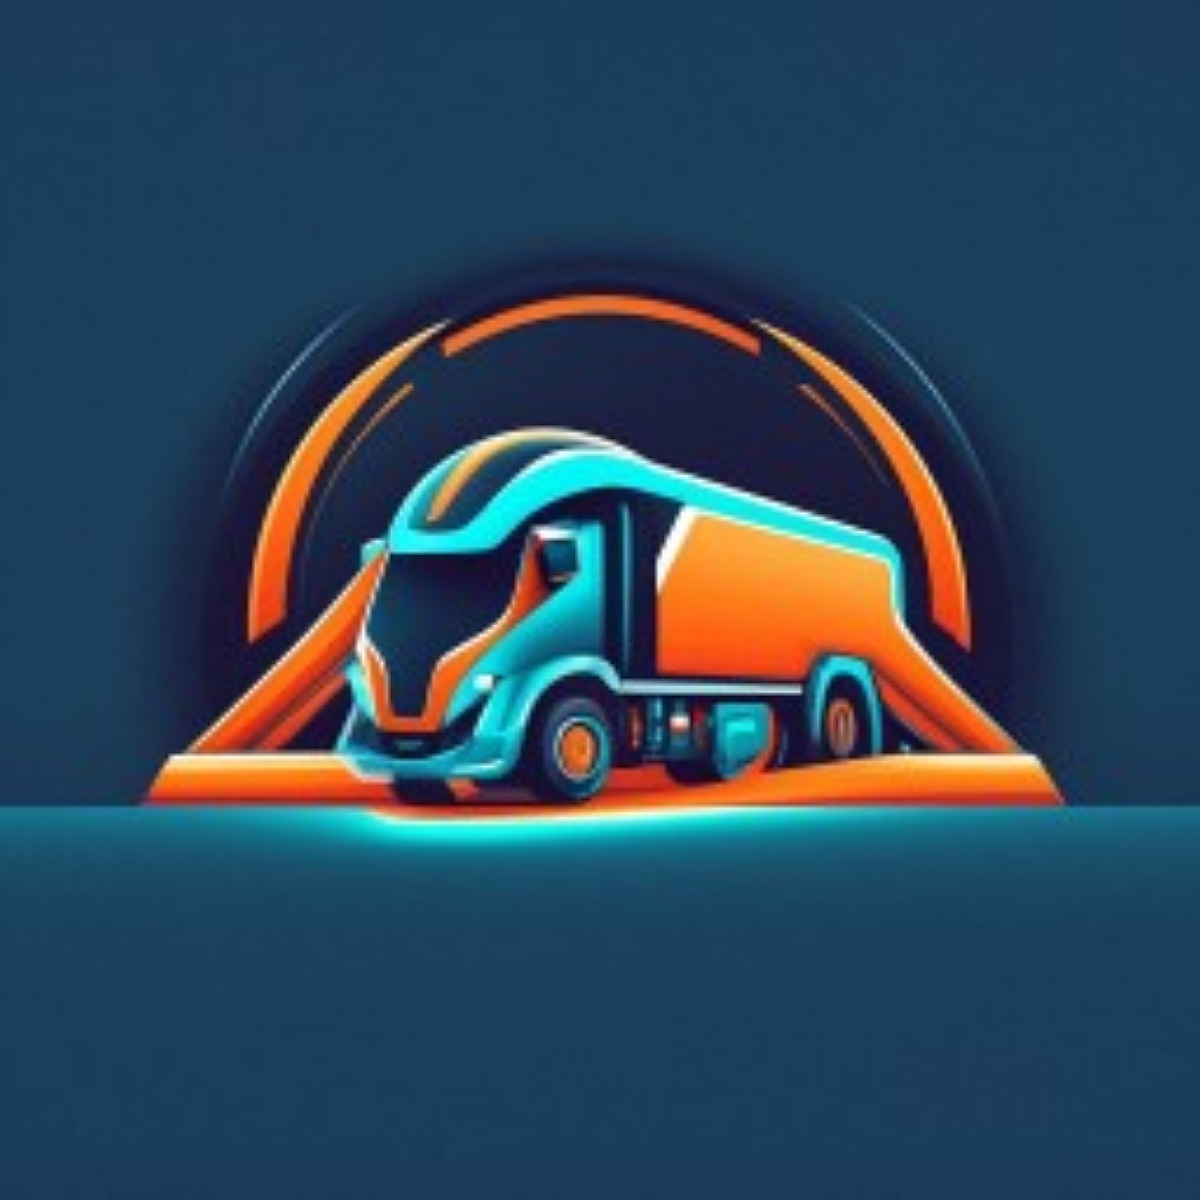 Transport company logo